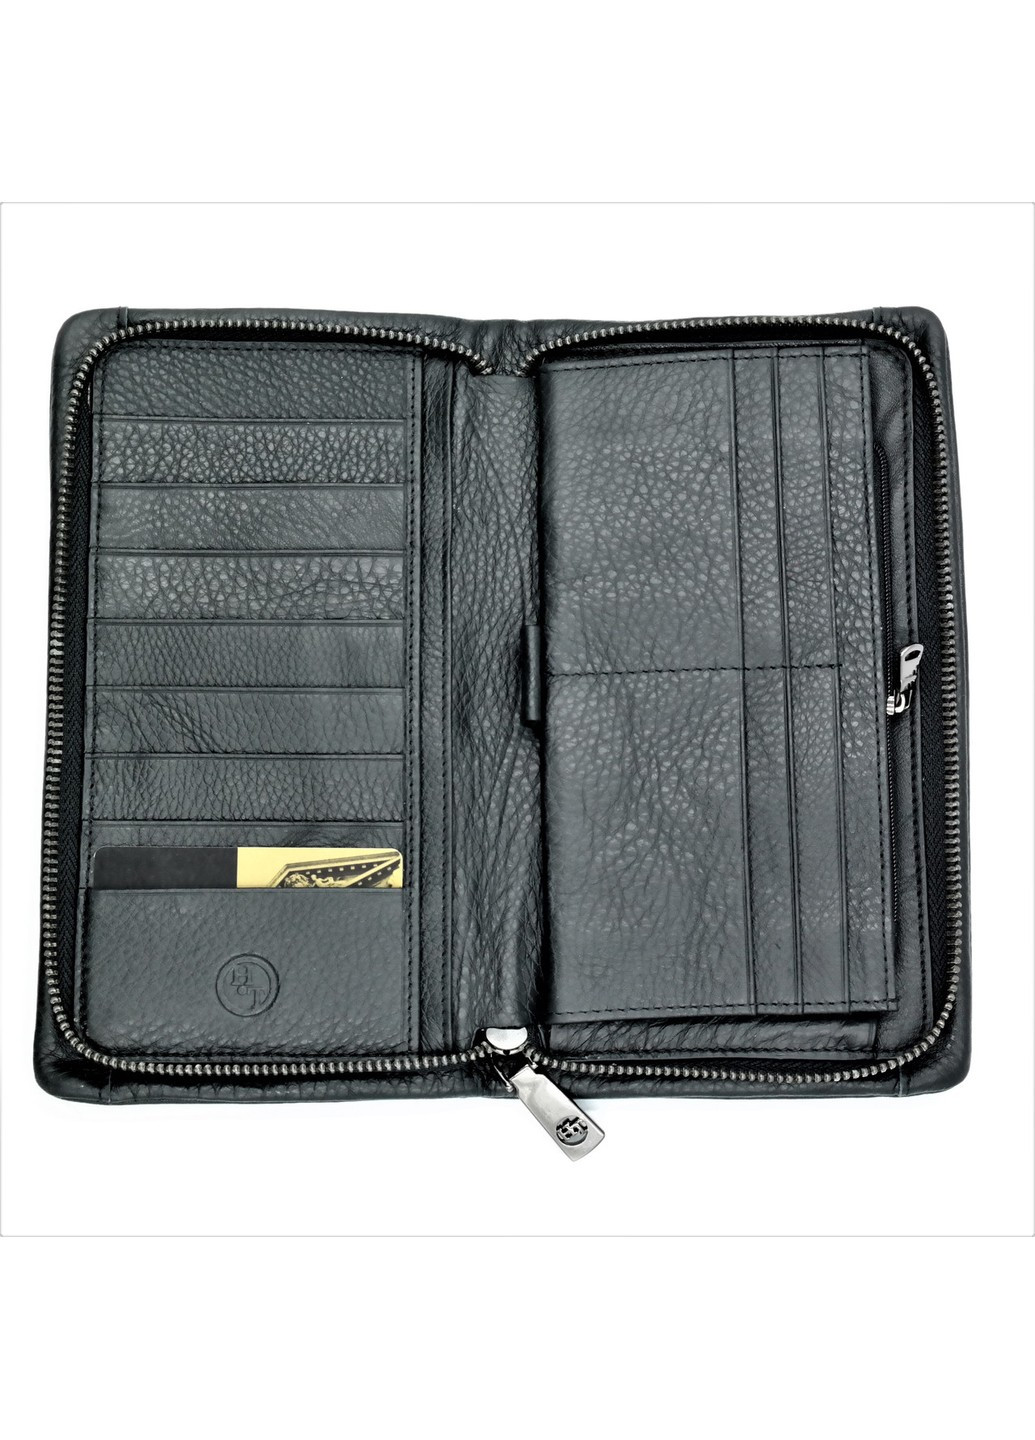 Мужской кожаный клатч-кошелек 23 х 13 х 3 см Черный wtro-nw-212G-017 Weatro (267406327)